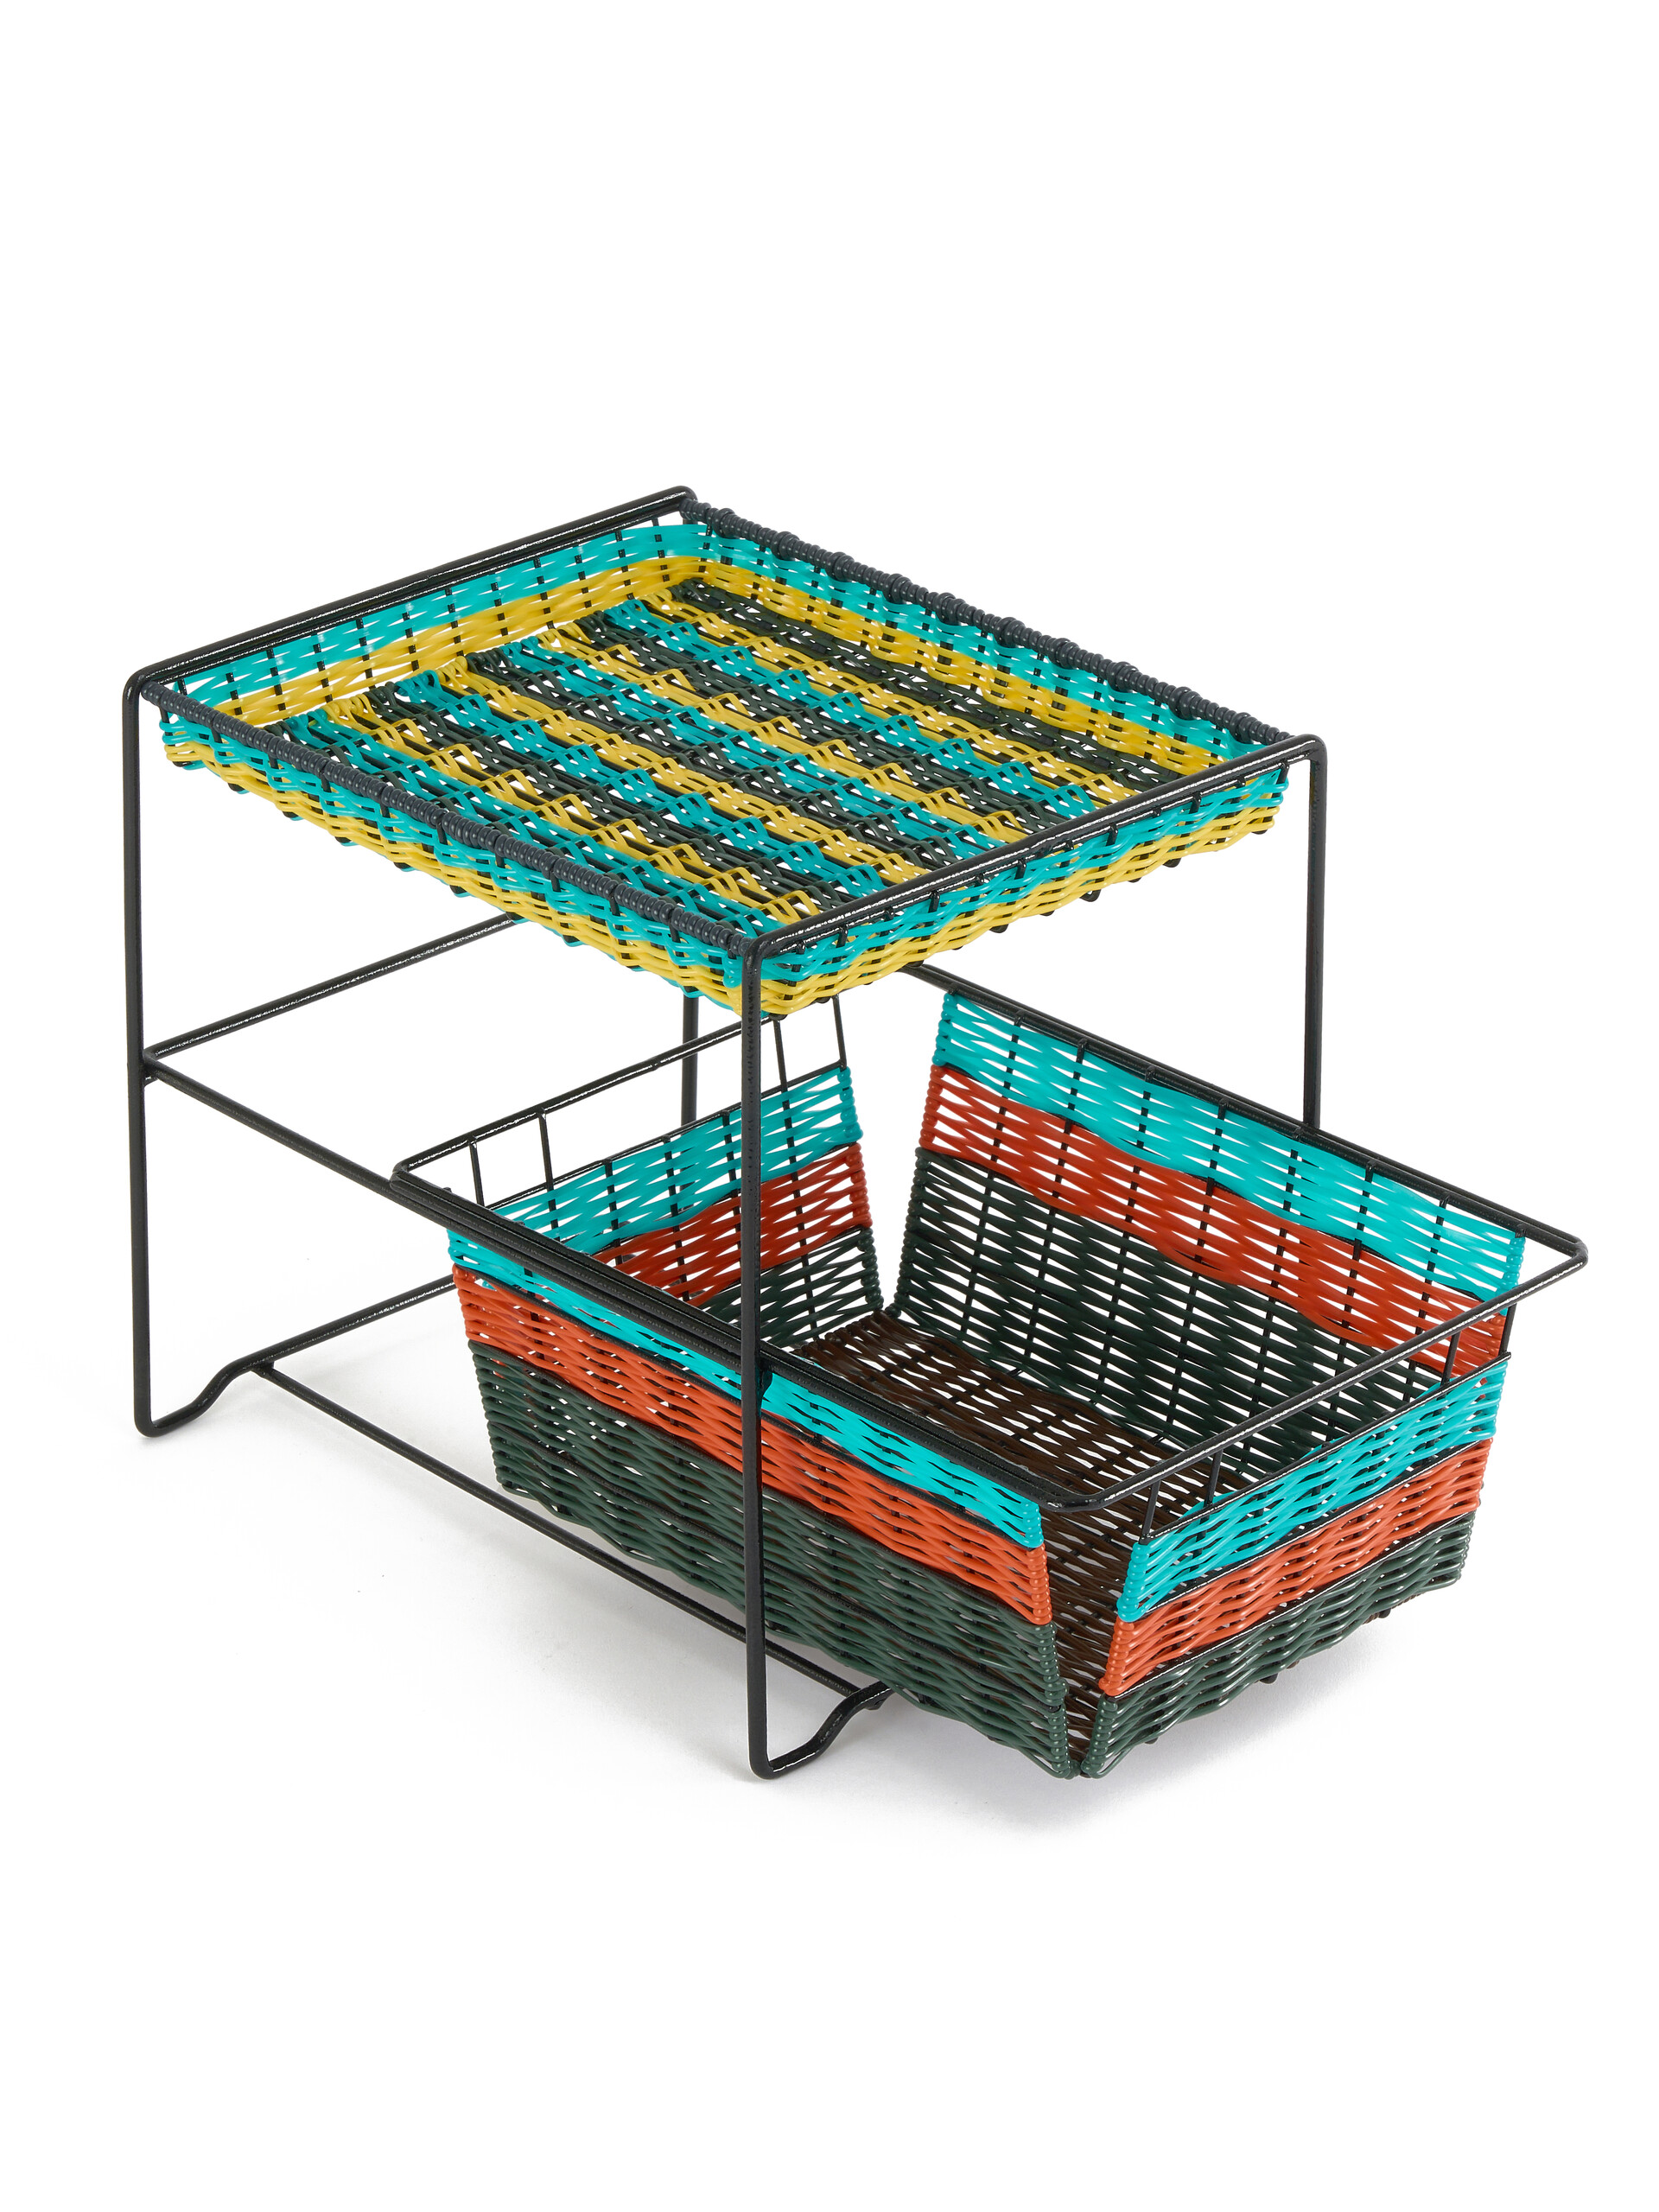 Light blue Marni Market 2-tier basket unit - Furniture - Image 3